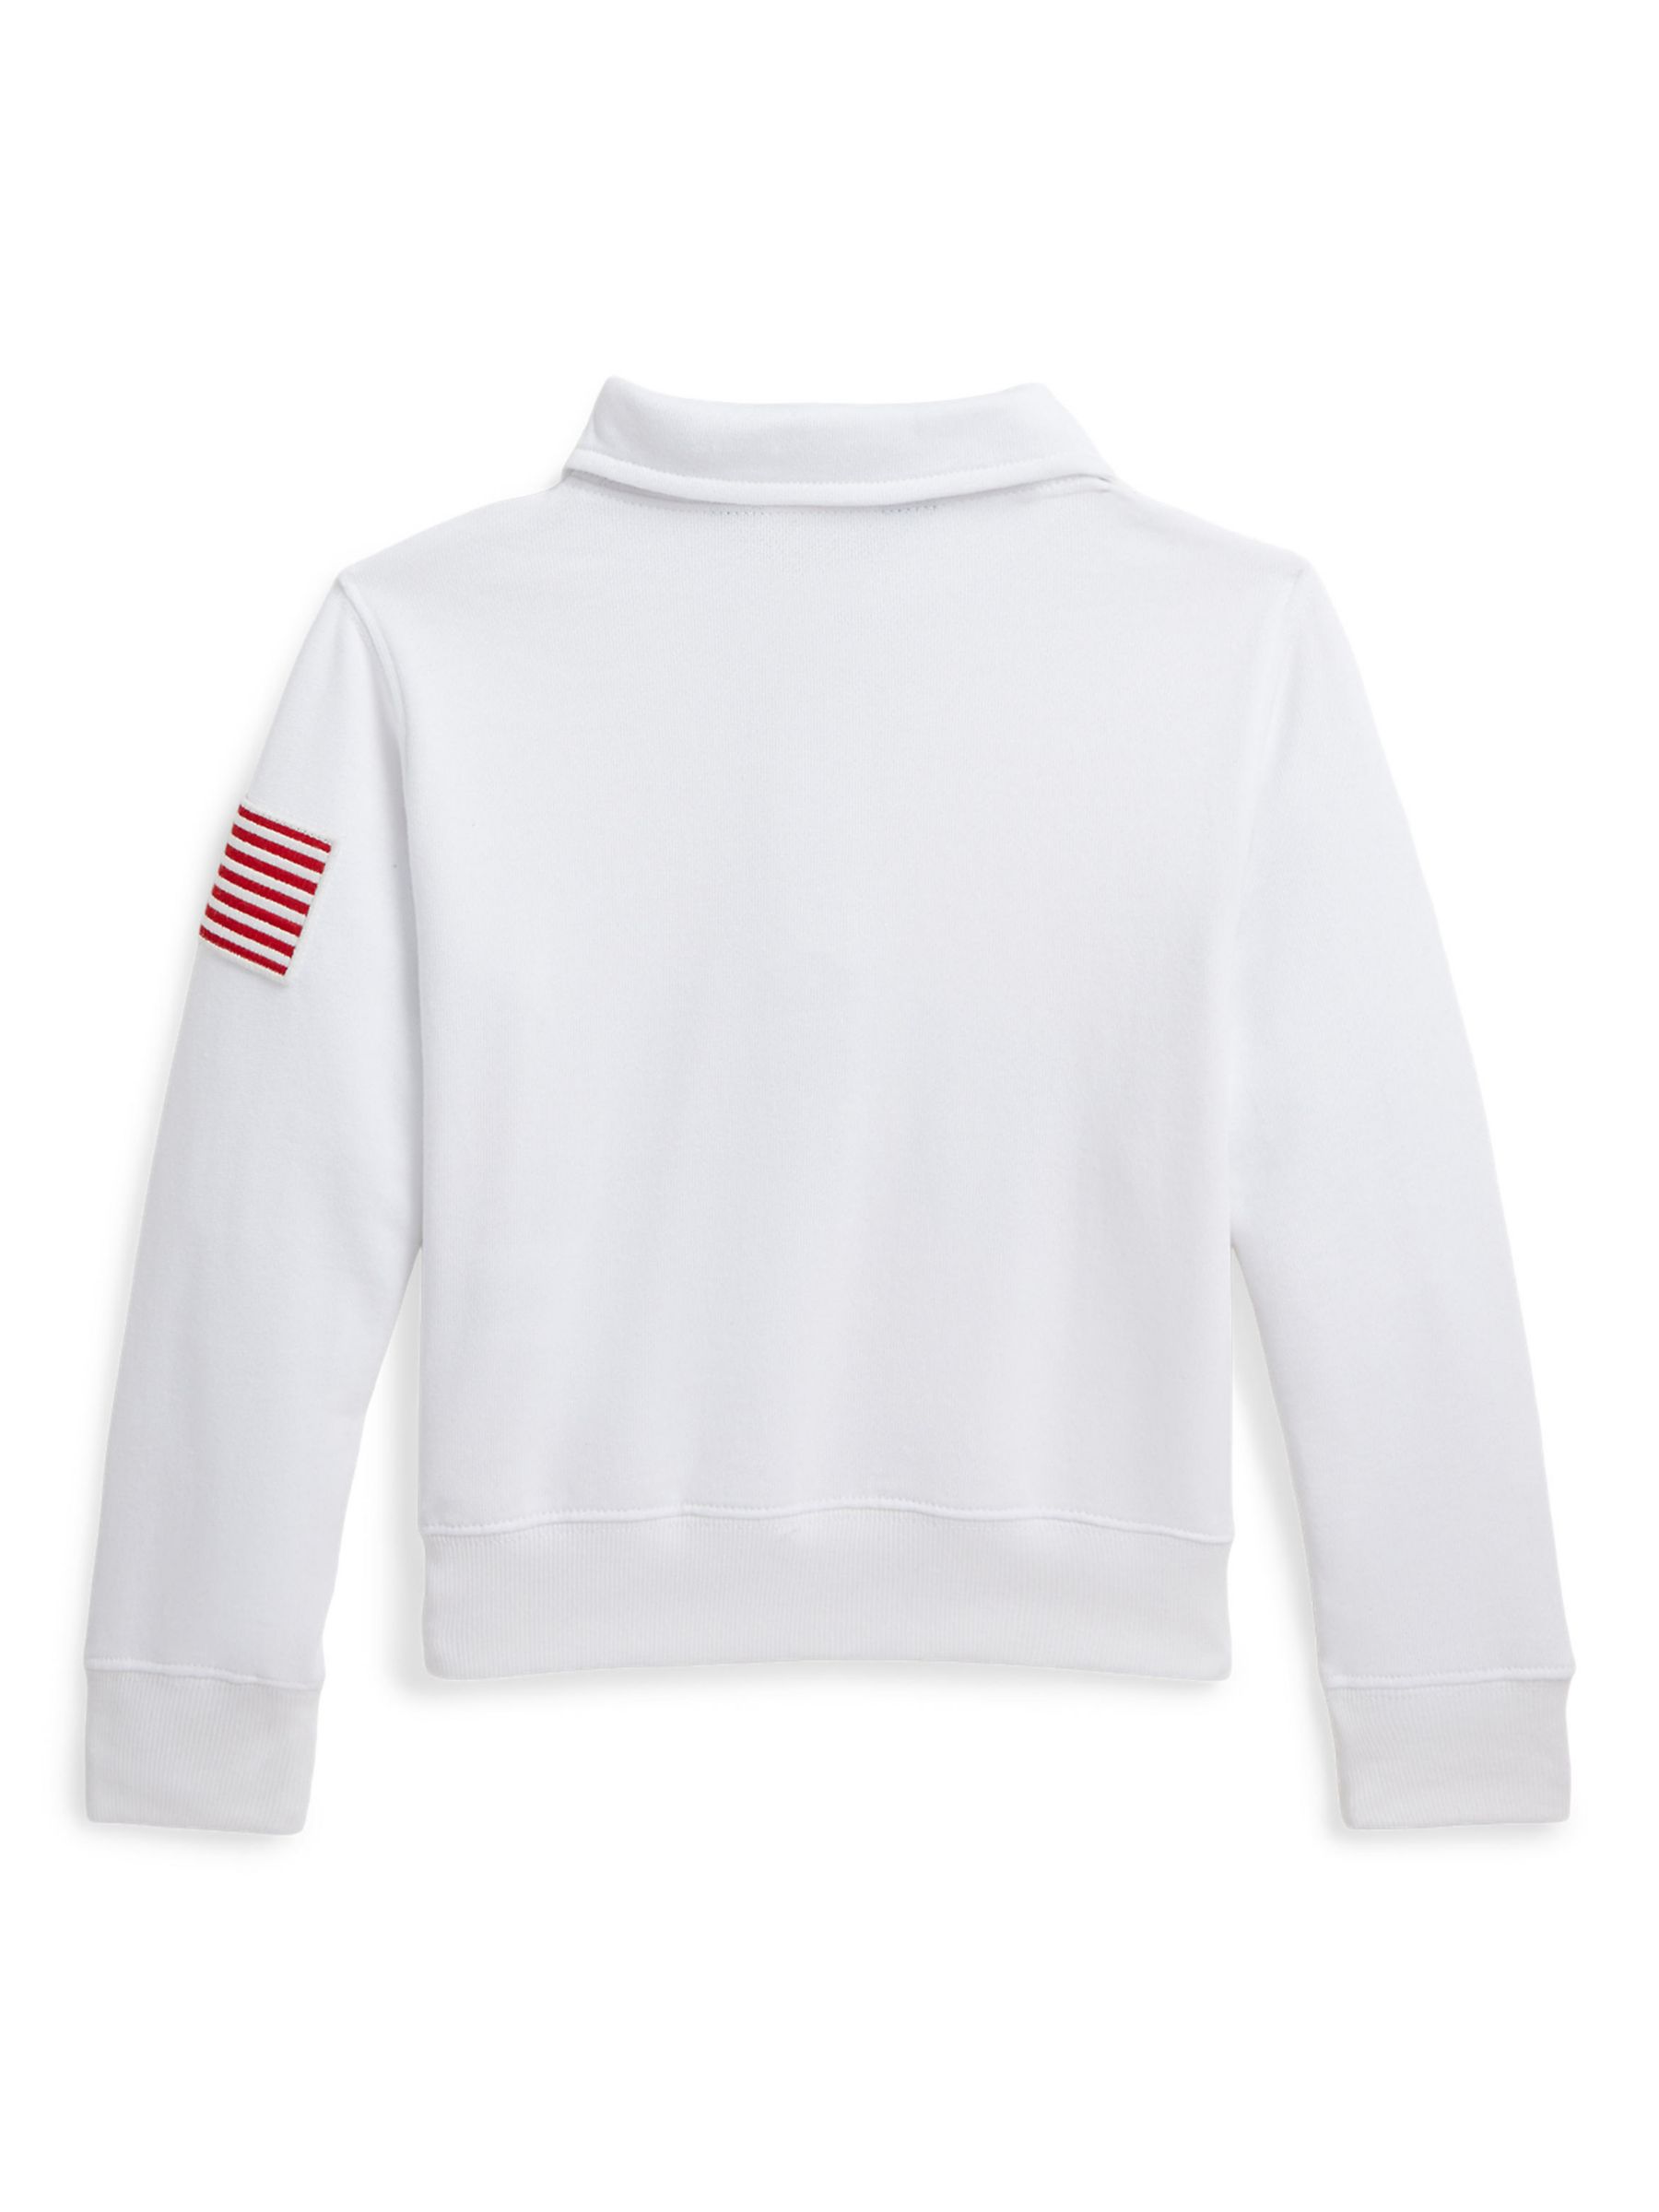 Ralph Lauren Kids' Logo USA Half Zip Sweatshirt, White, 2 years